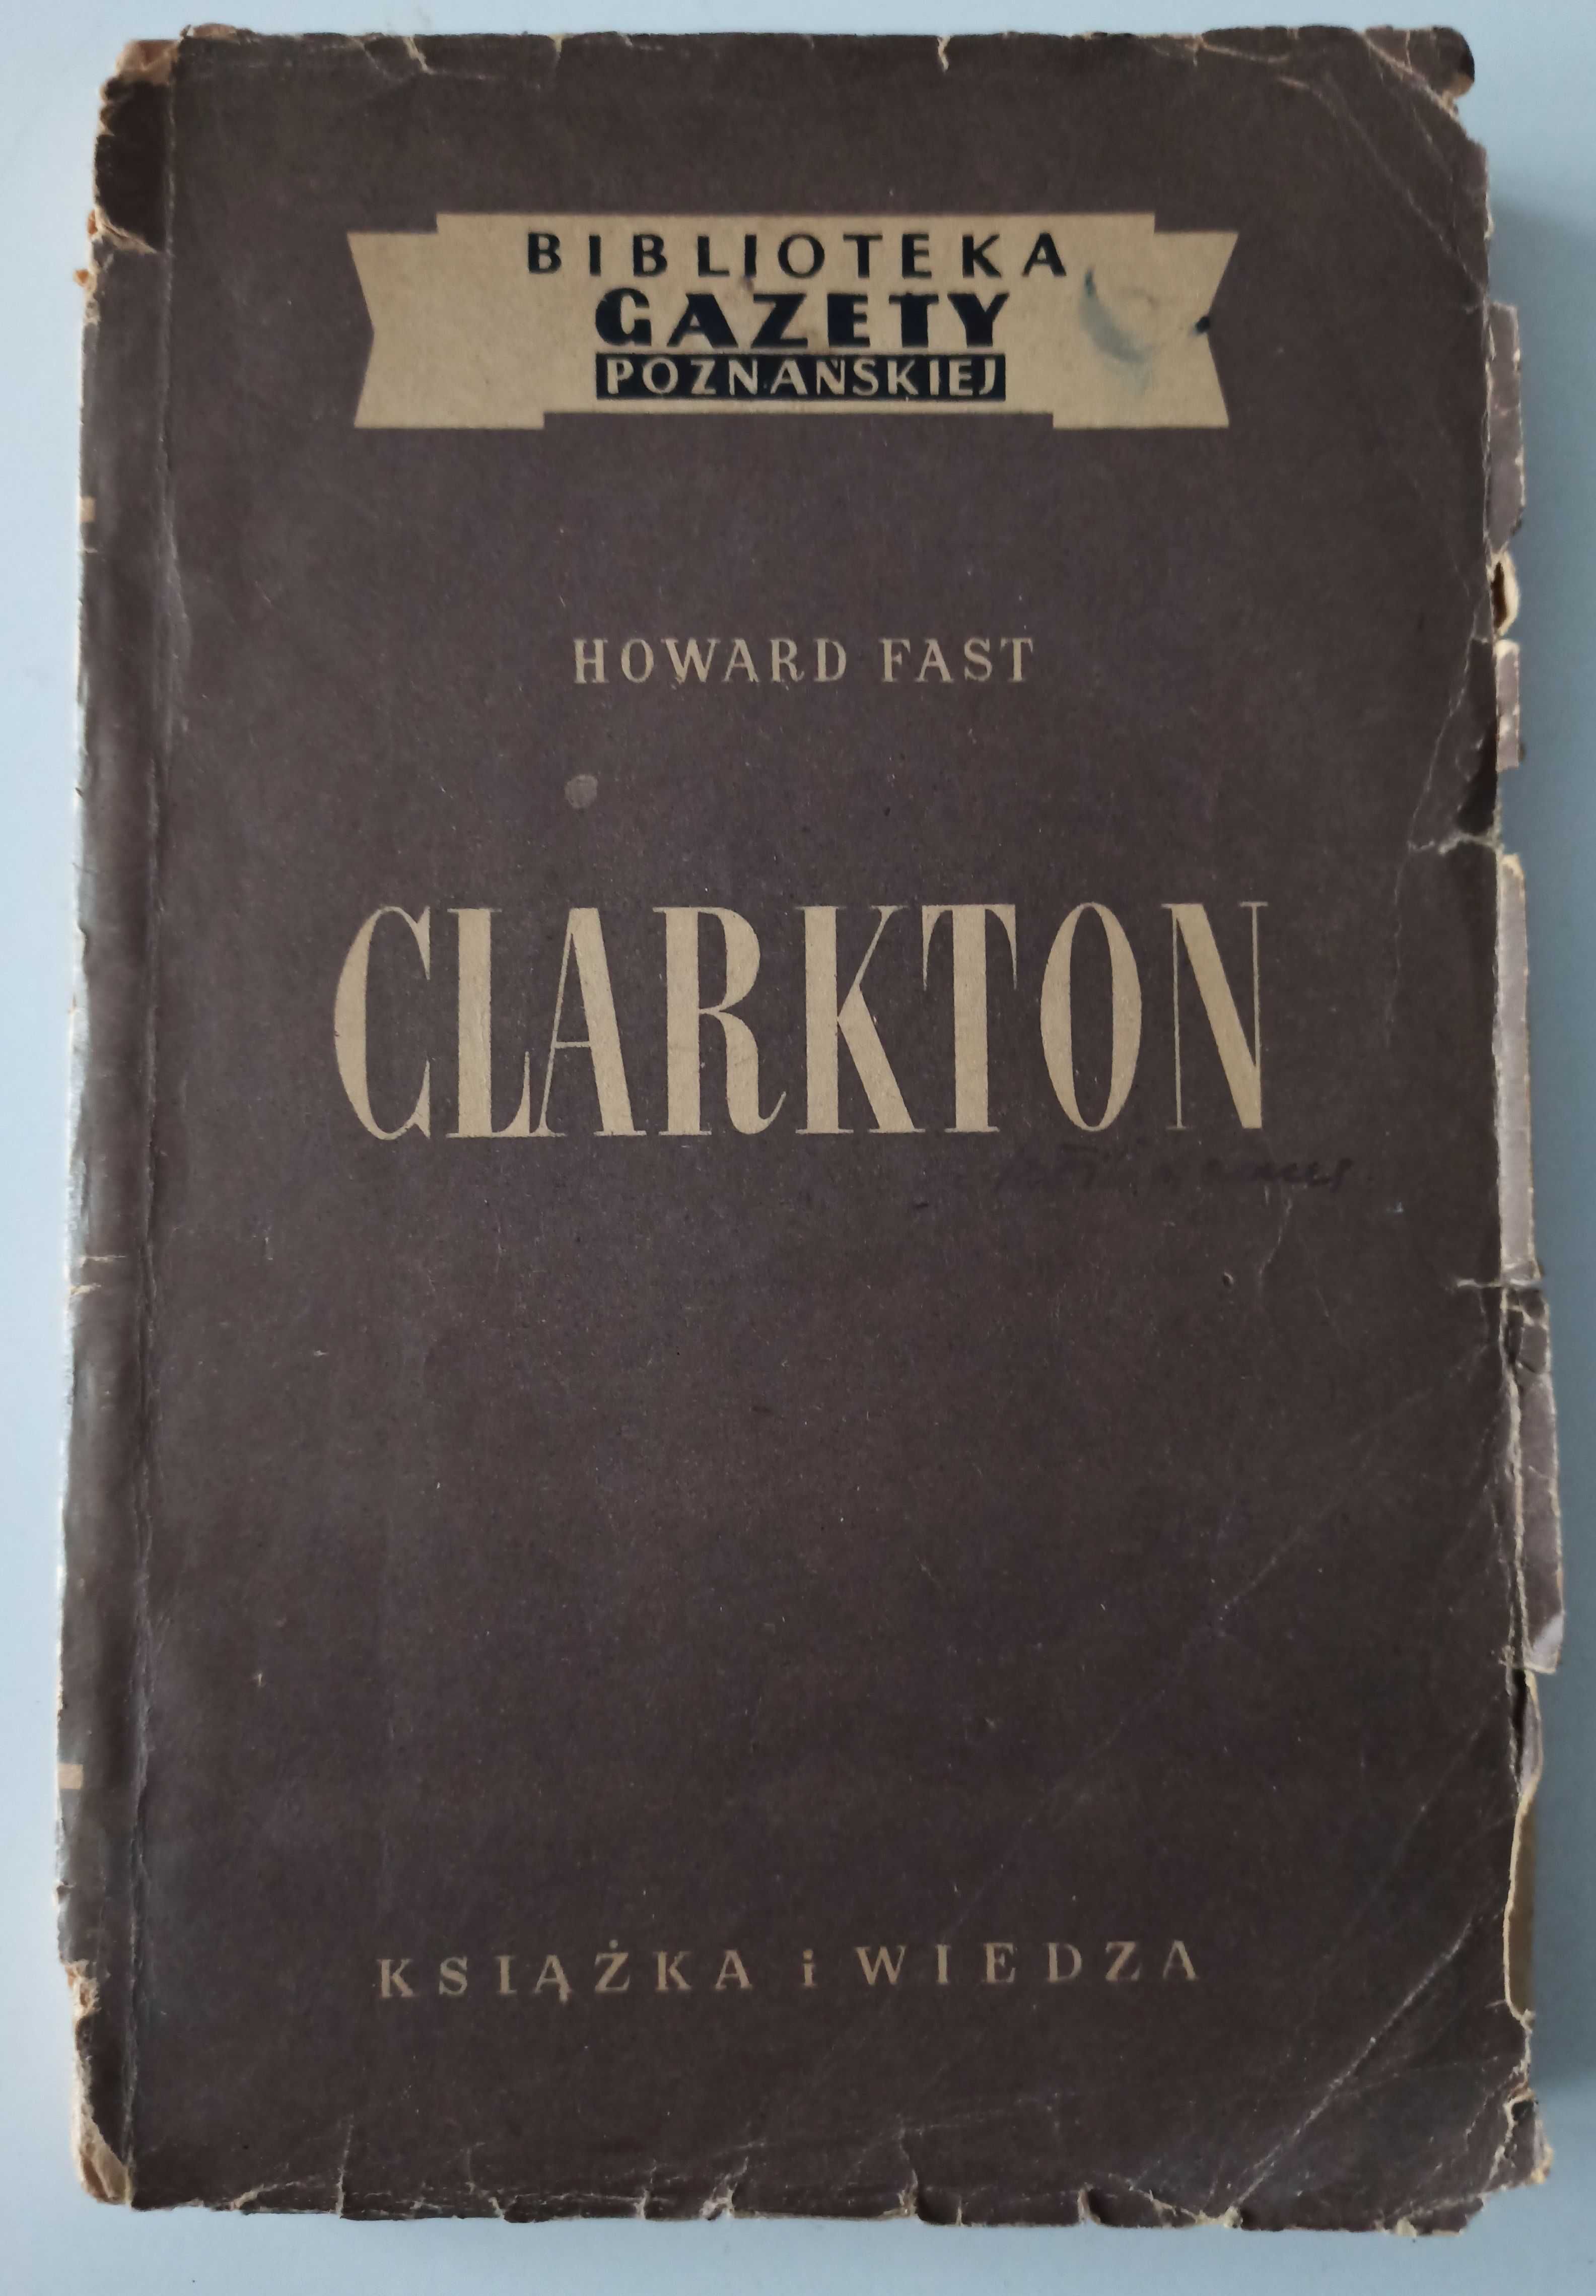 Howard Fast - Clarkton - literatura piękna wyd. 1951